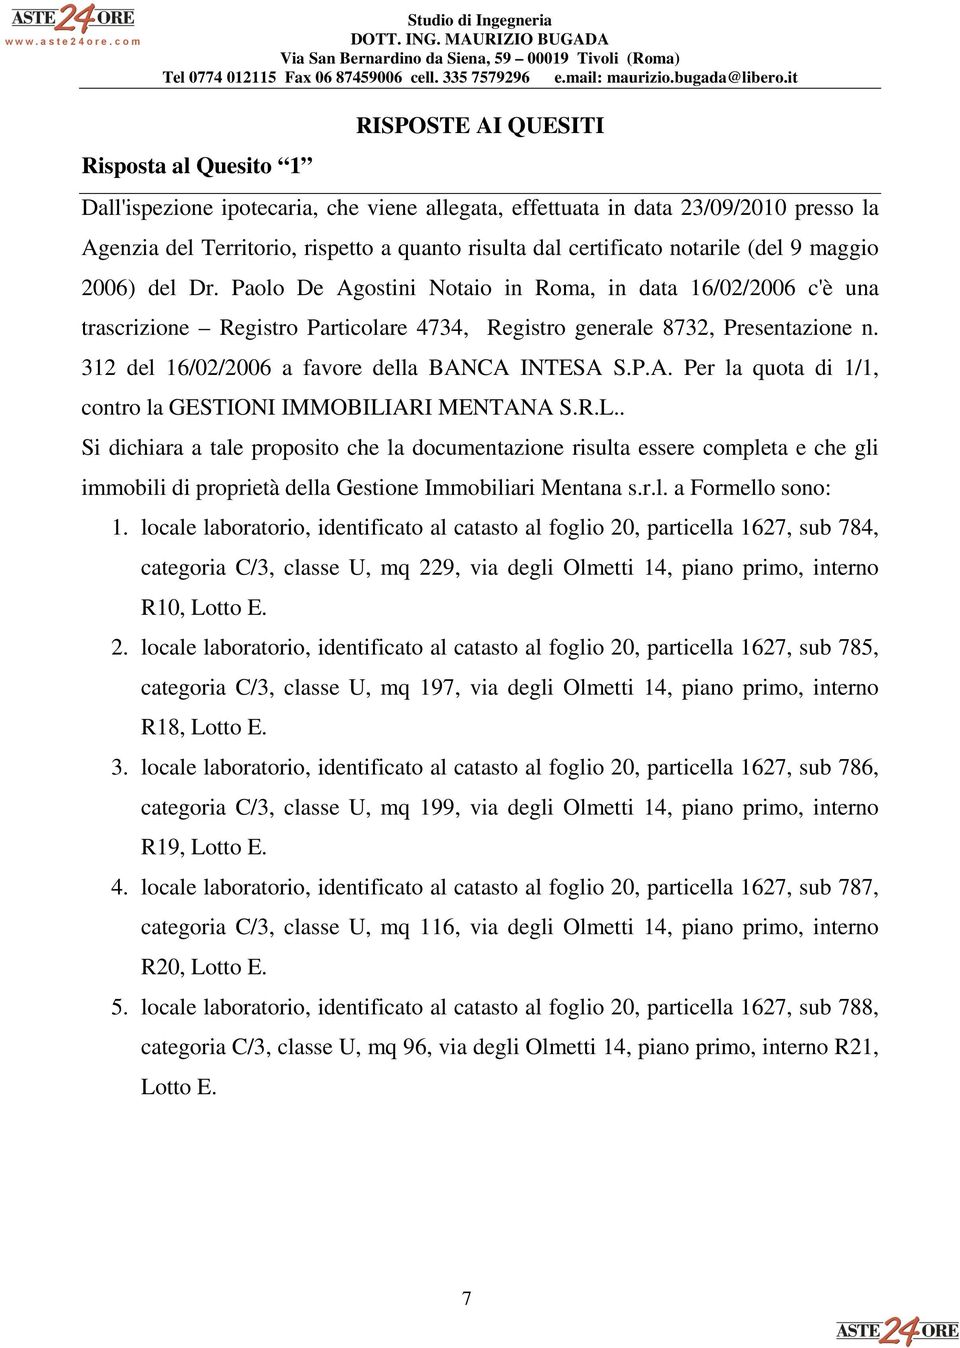 312 del 16/02/2006 a favore della BANCA INTESA S.P.A. Per la quota di 1/1, contro la GESTIONI IMMOBILI